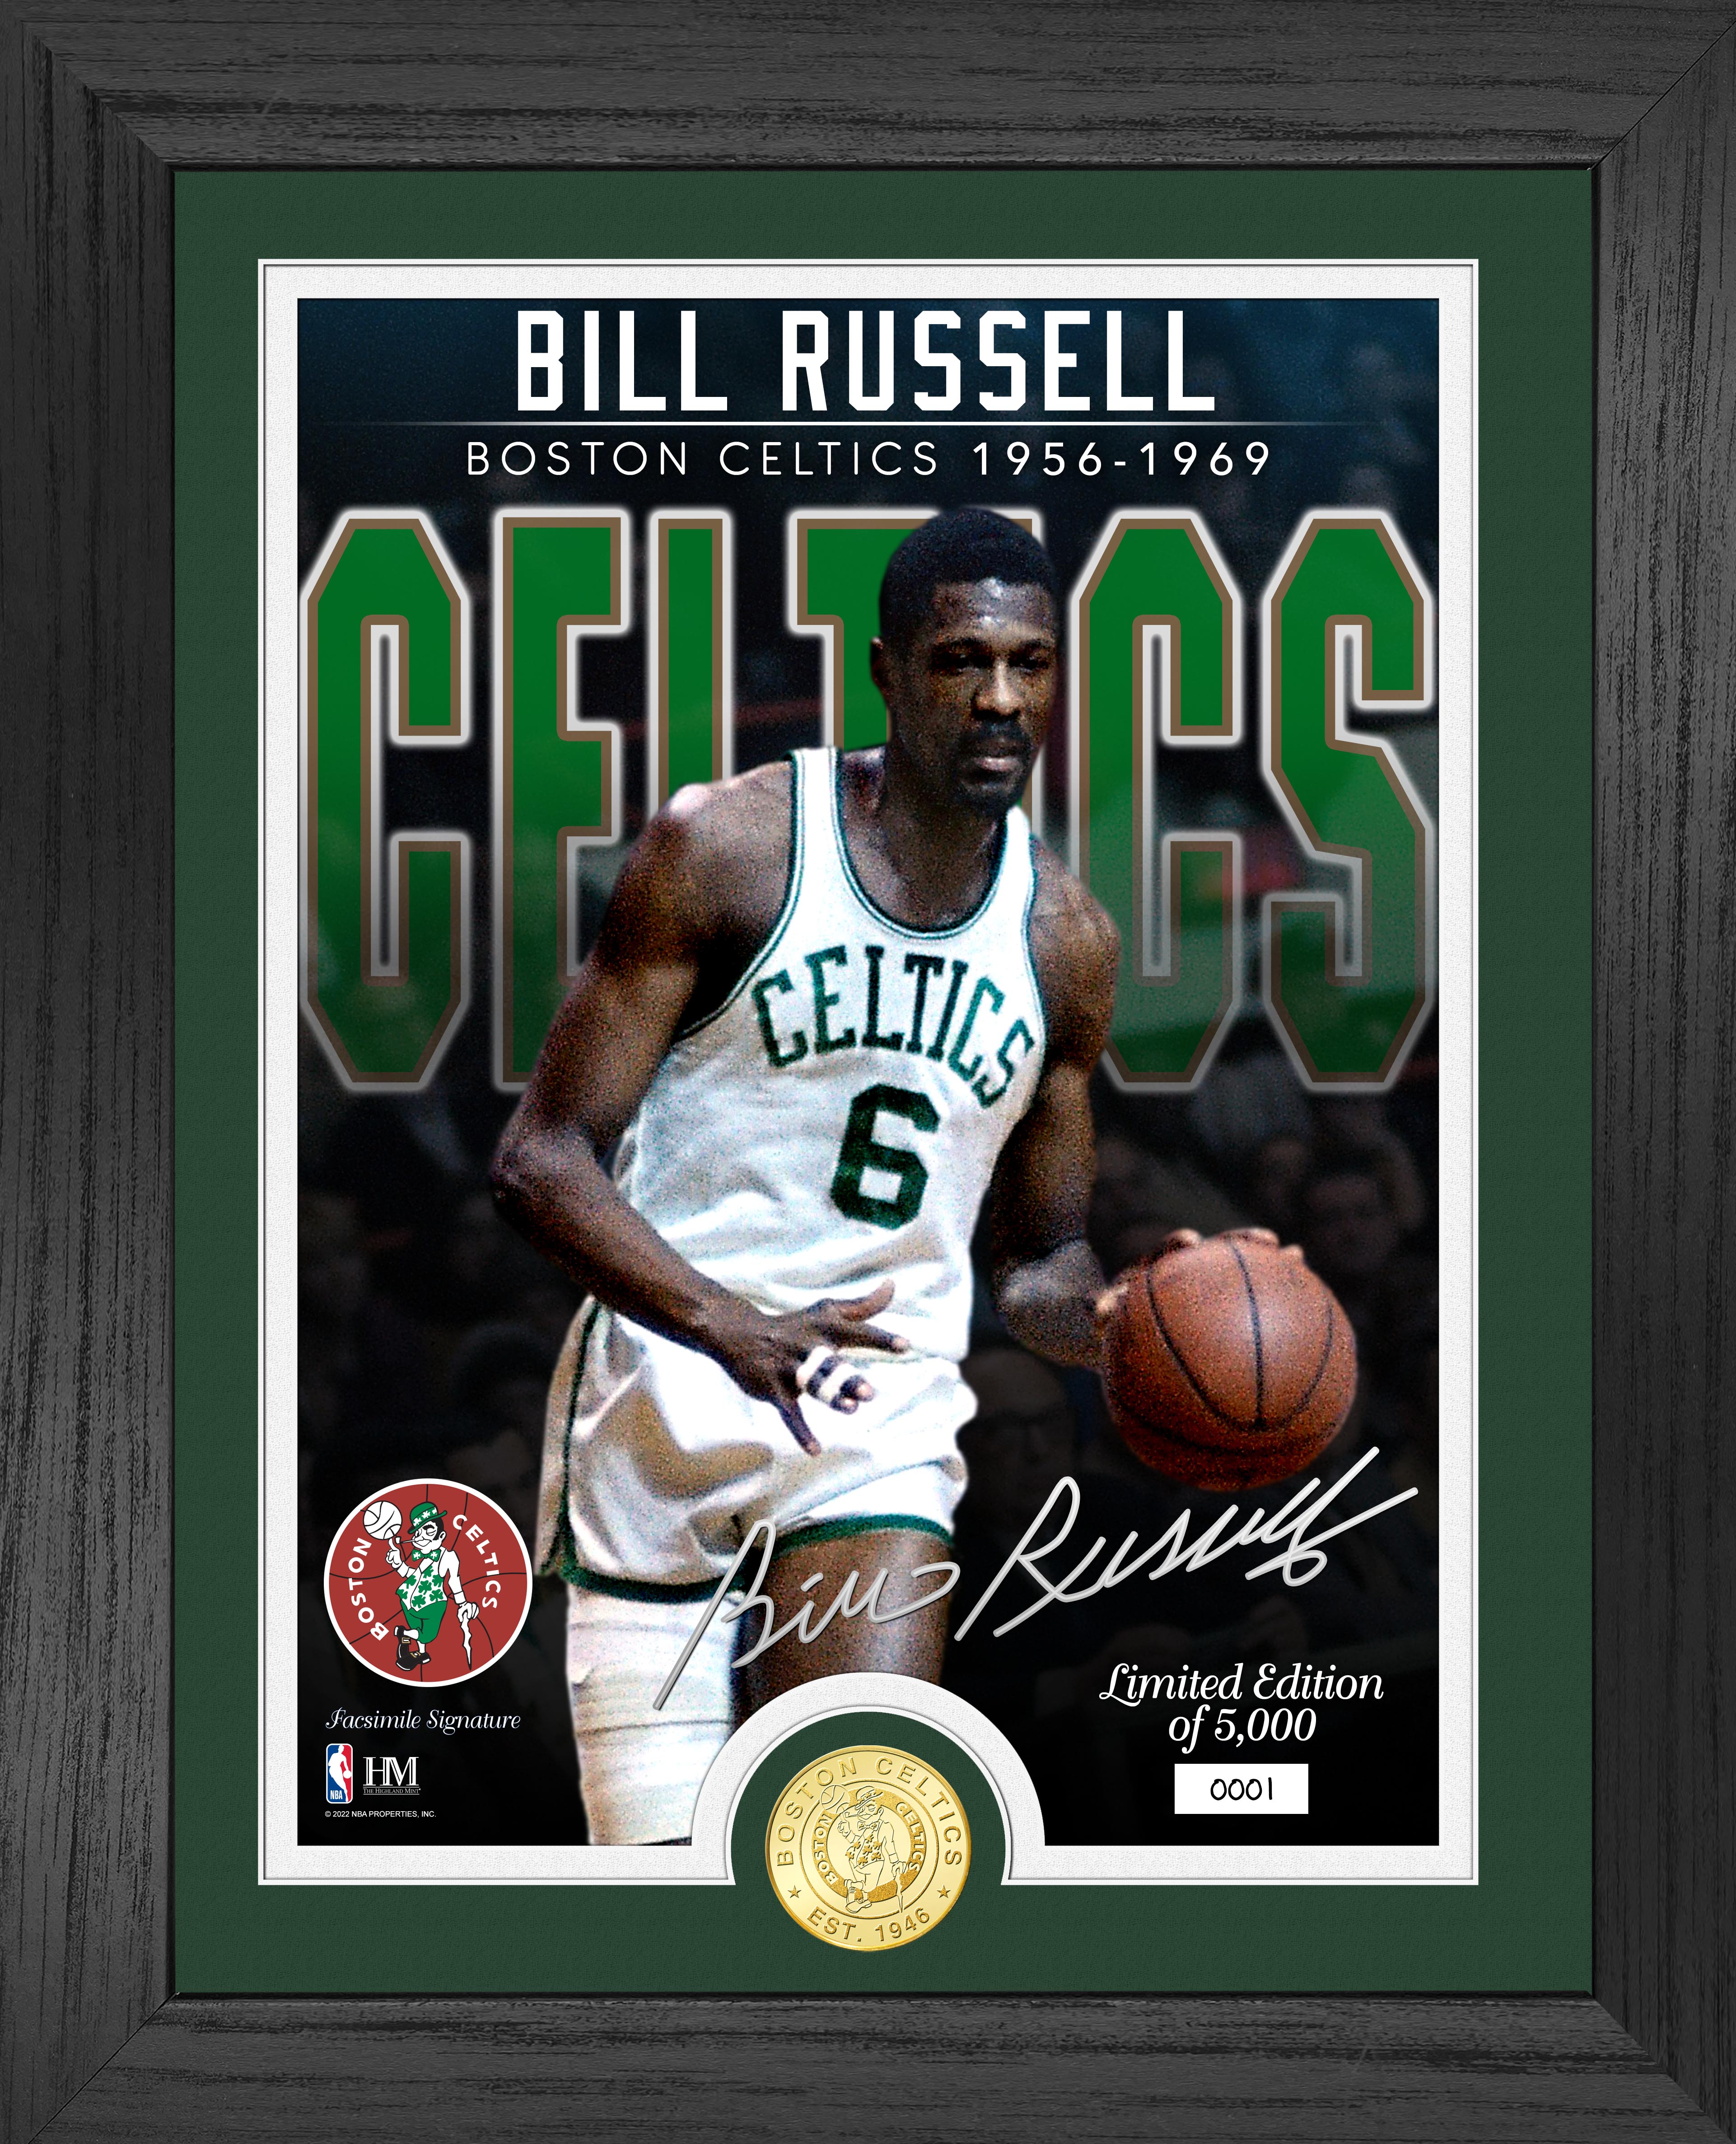 Bill Russell Celtics Bronze Coin Photo Mint